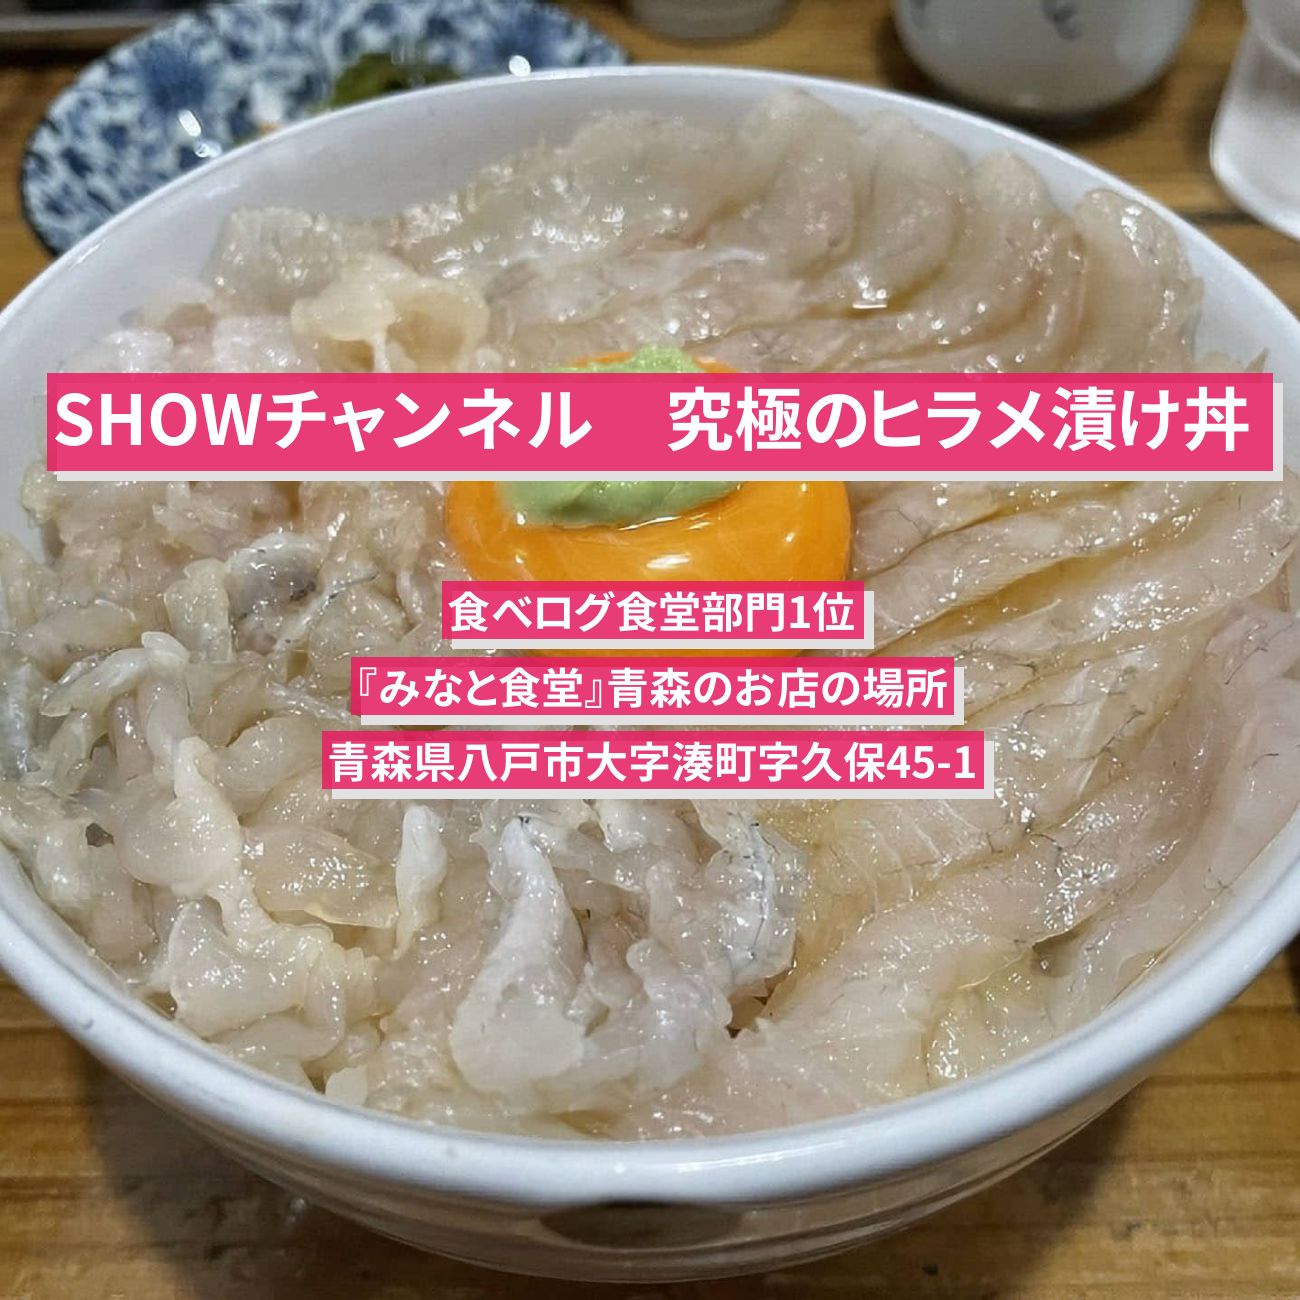 【SHOWチャンネル】ヒラメ漬け丼(食べログ食堂部門1位)『みなと食堂』青森のお店の場所